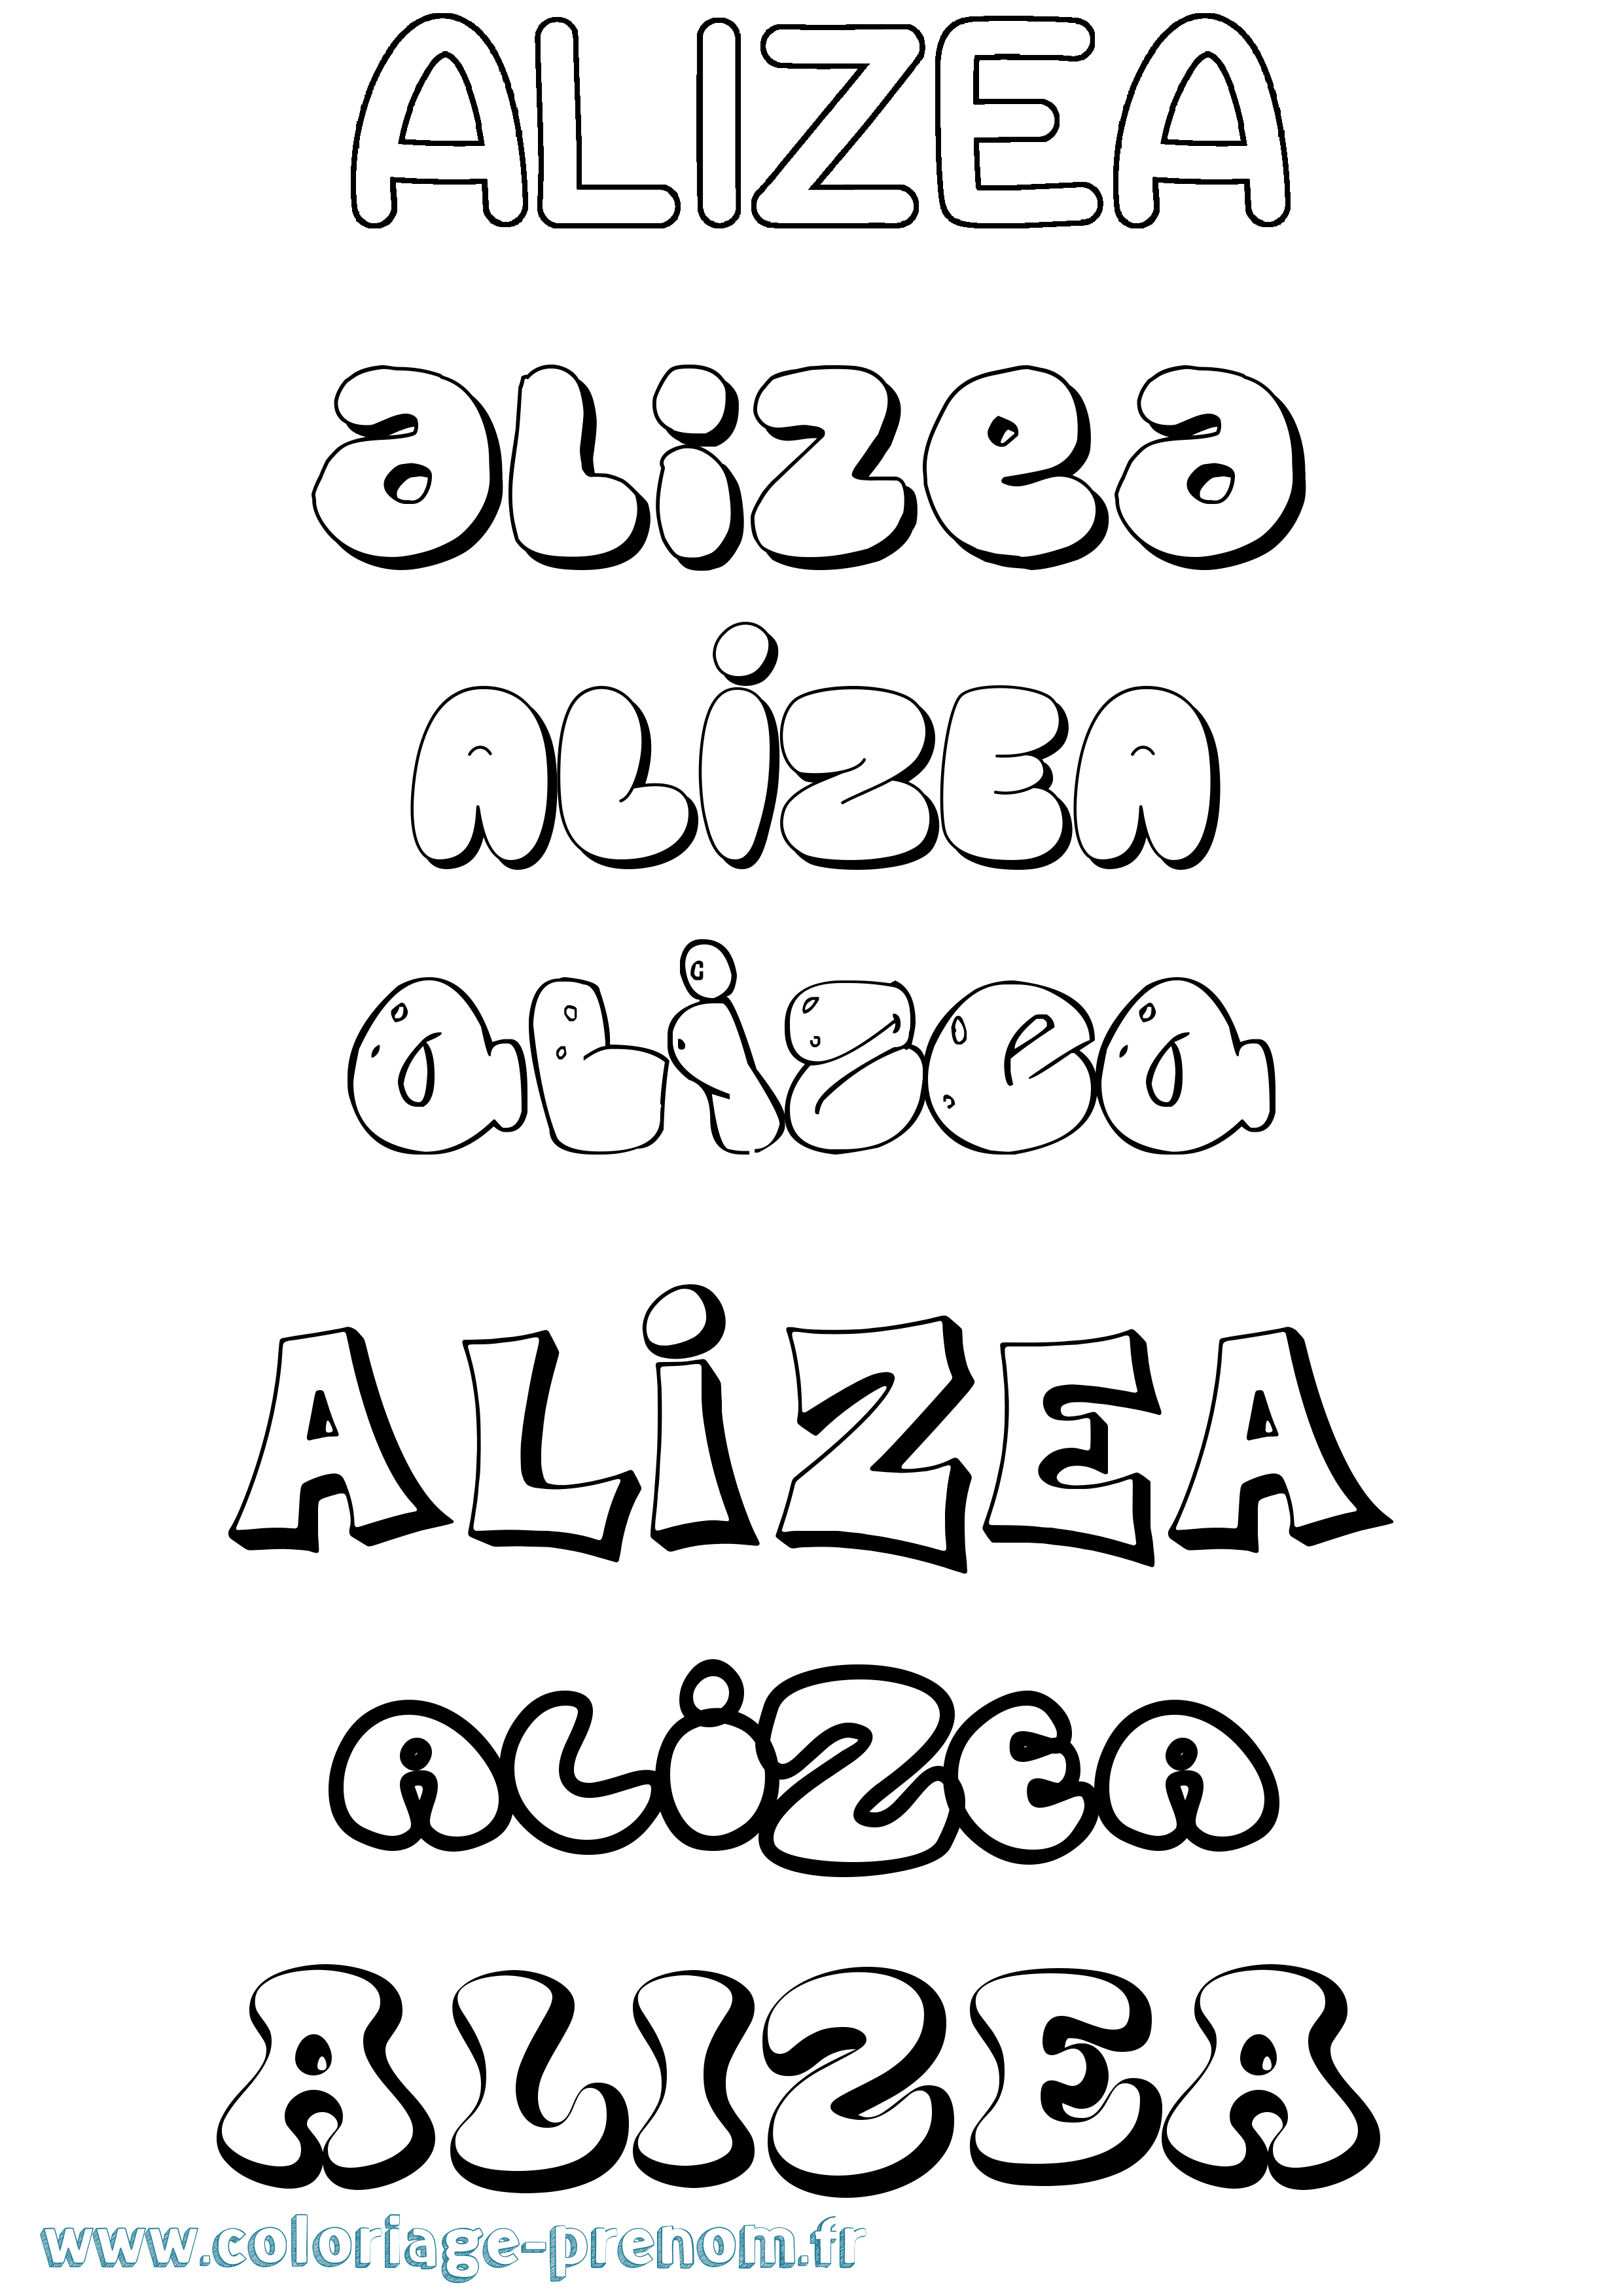 Coloriage prénom Alizea Bubble